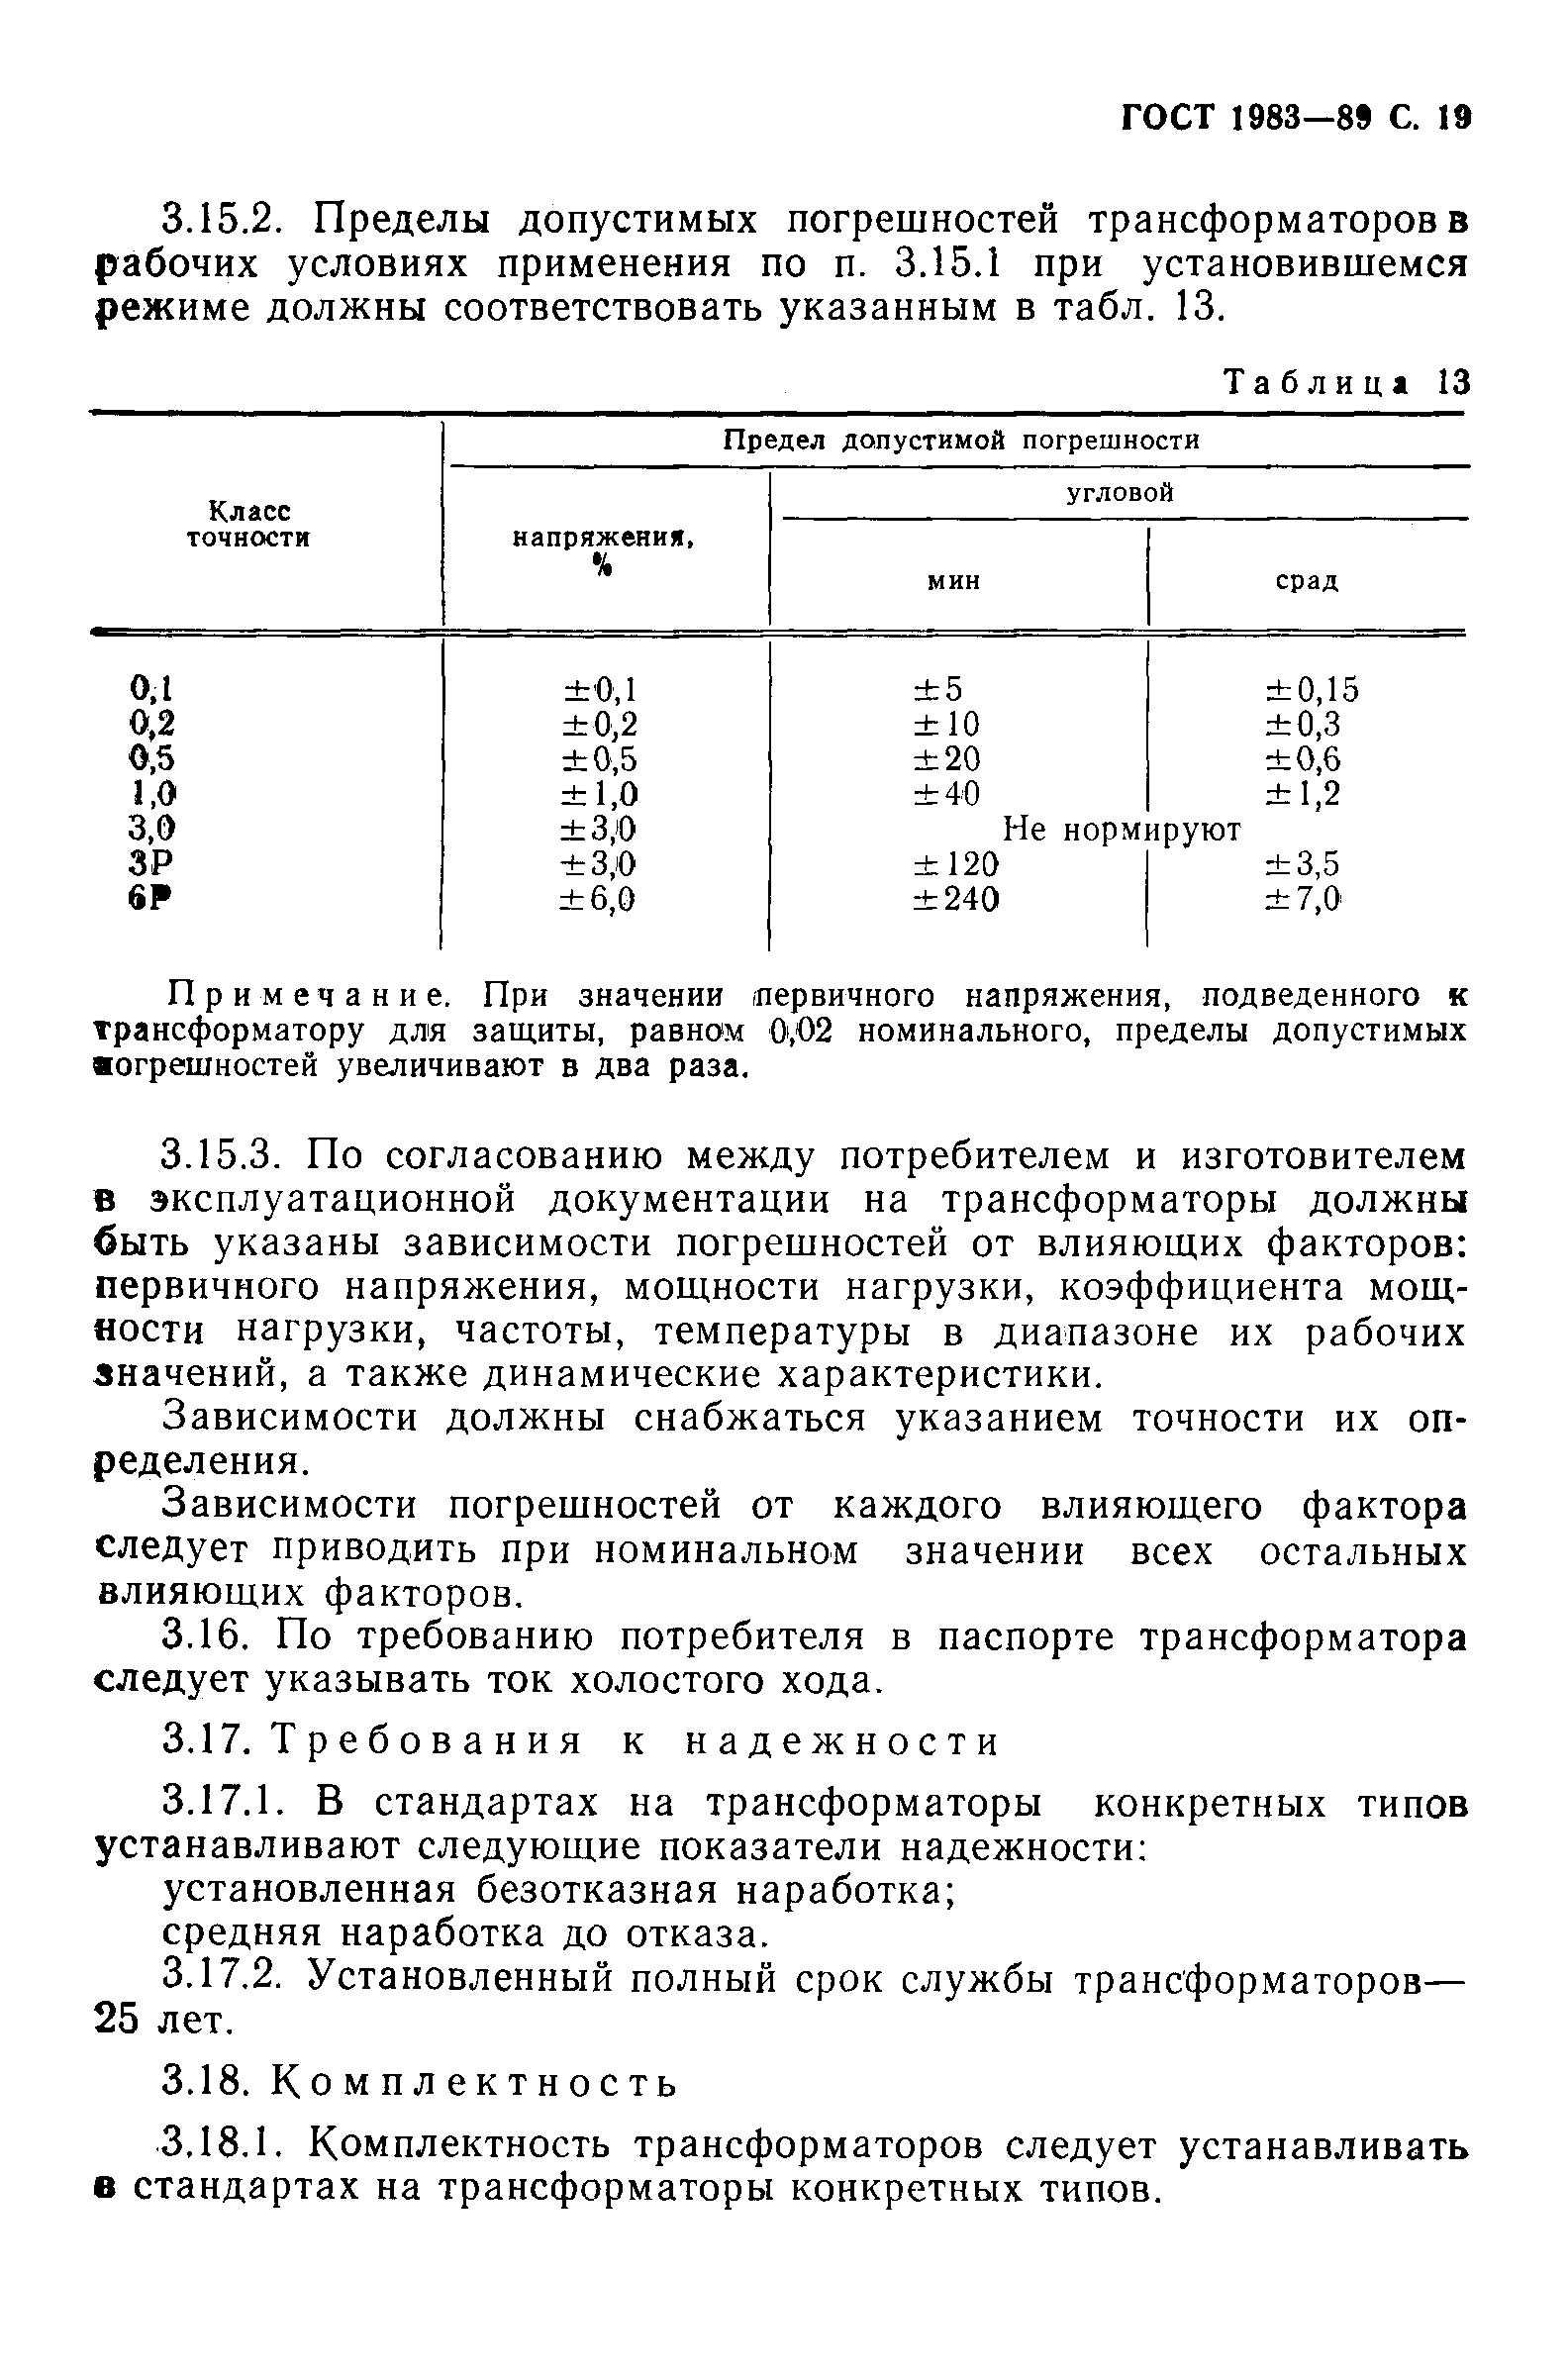 ГОСТ 1983-89. Страница 20